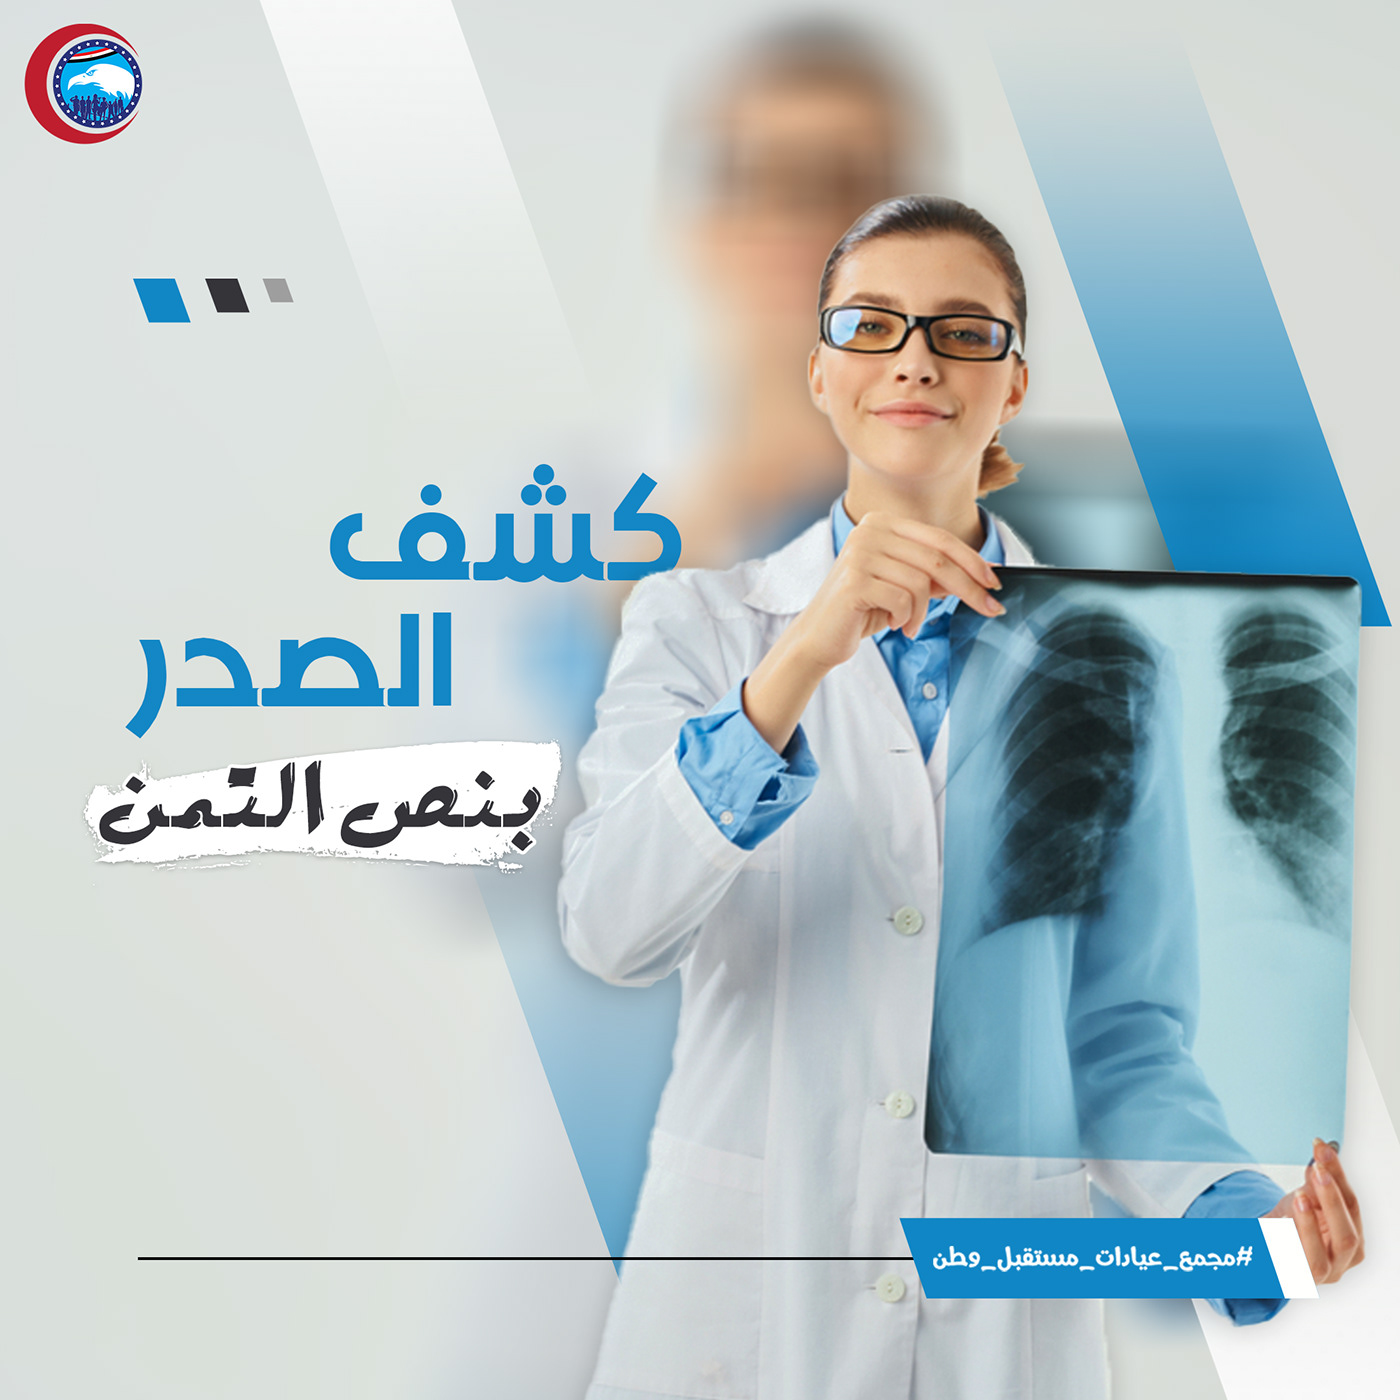 graphic design  marketing   medical medical center